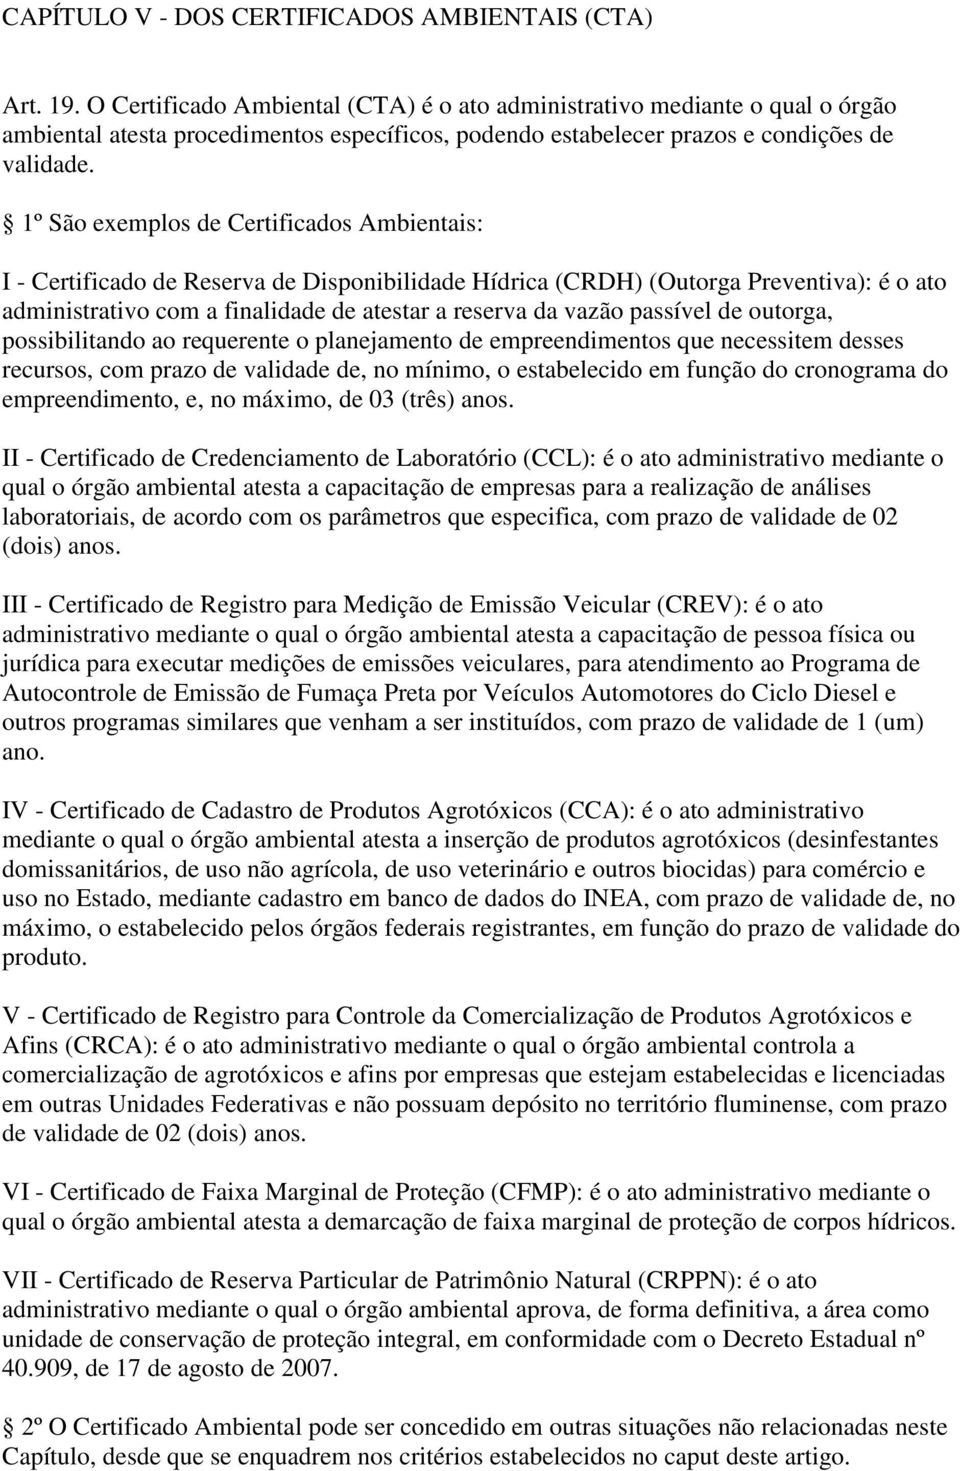 1º São exemplos de Certificados Ambientais: I - Certificado de Reserva de Disponibilidade Hídrica (CRDH) (Outorga Preventiva): é o ato administrativo com a finalidade de atestar a reserva da vazão